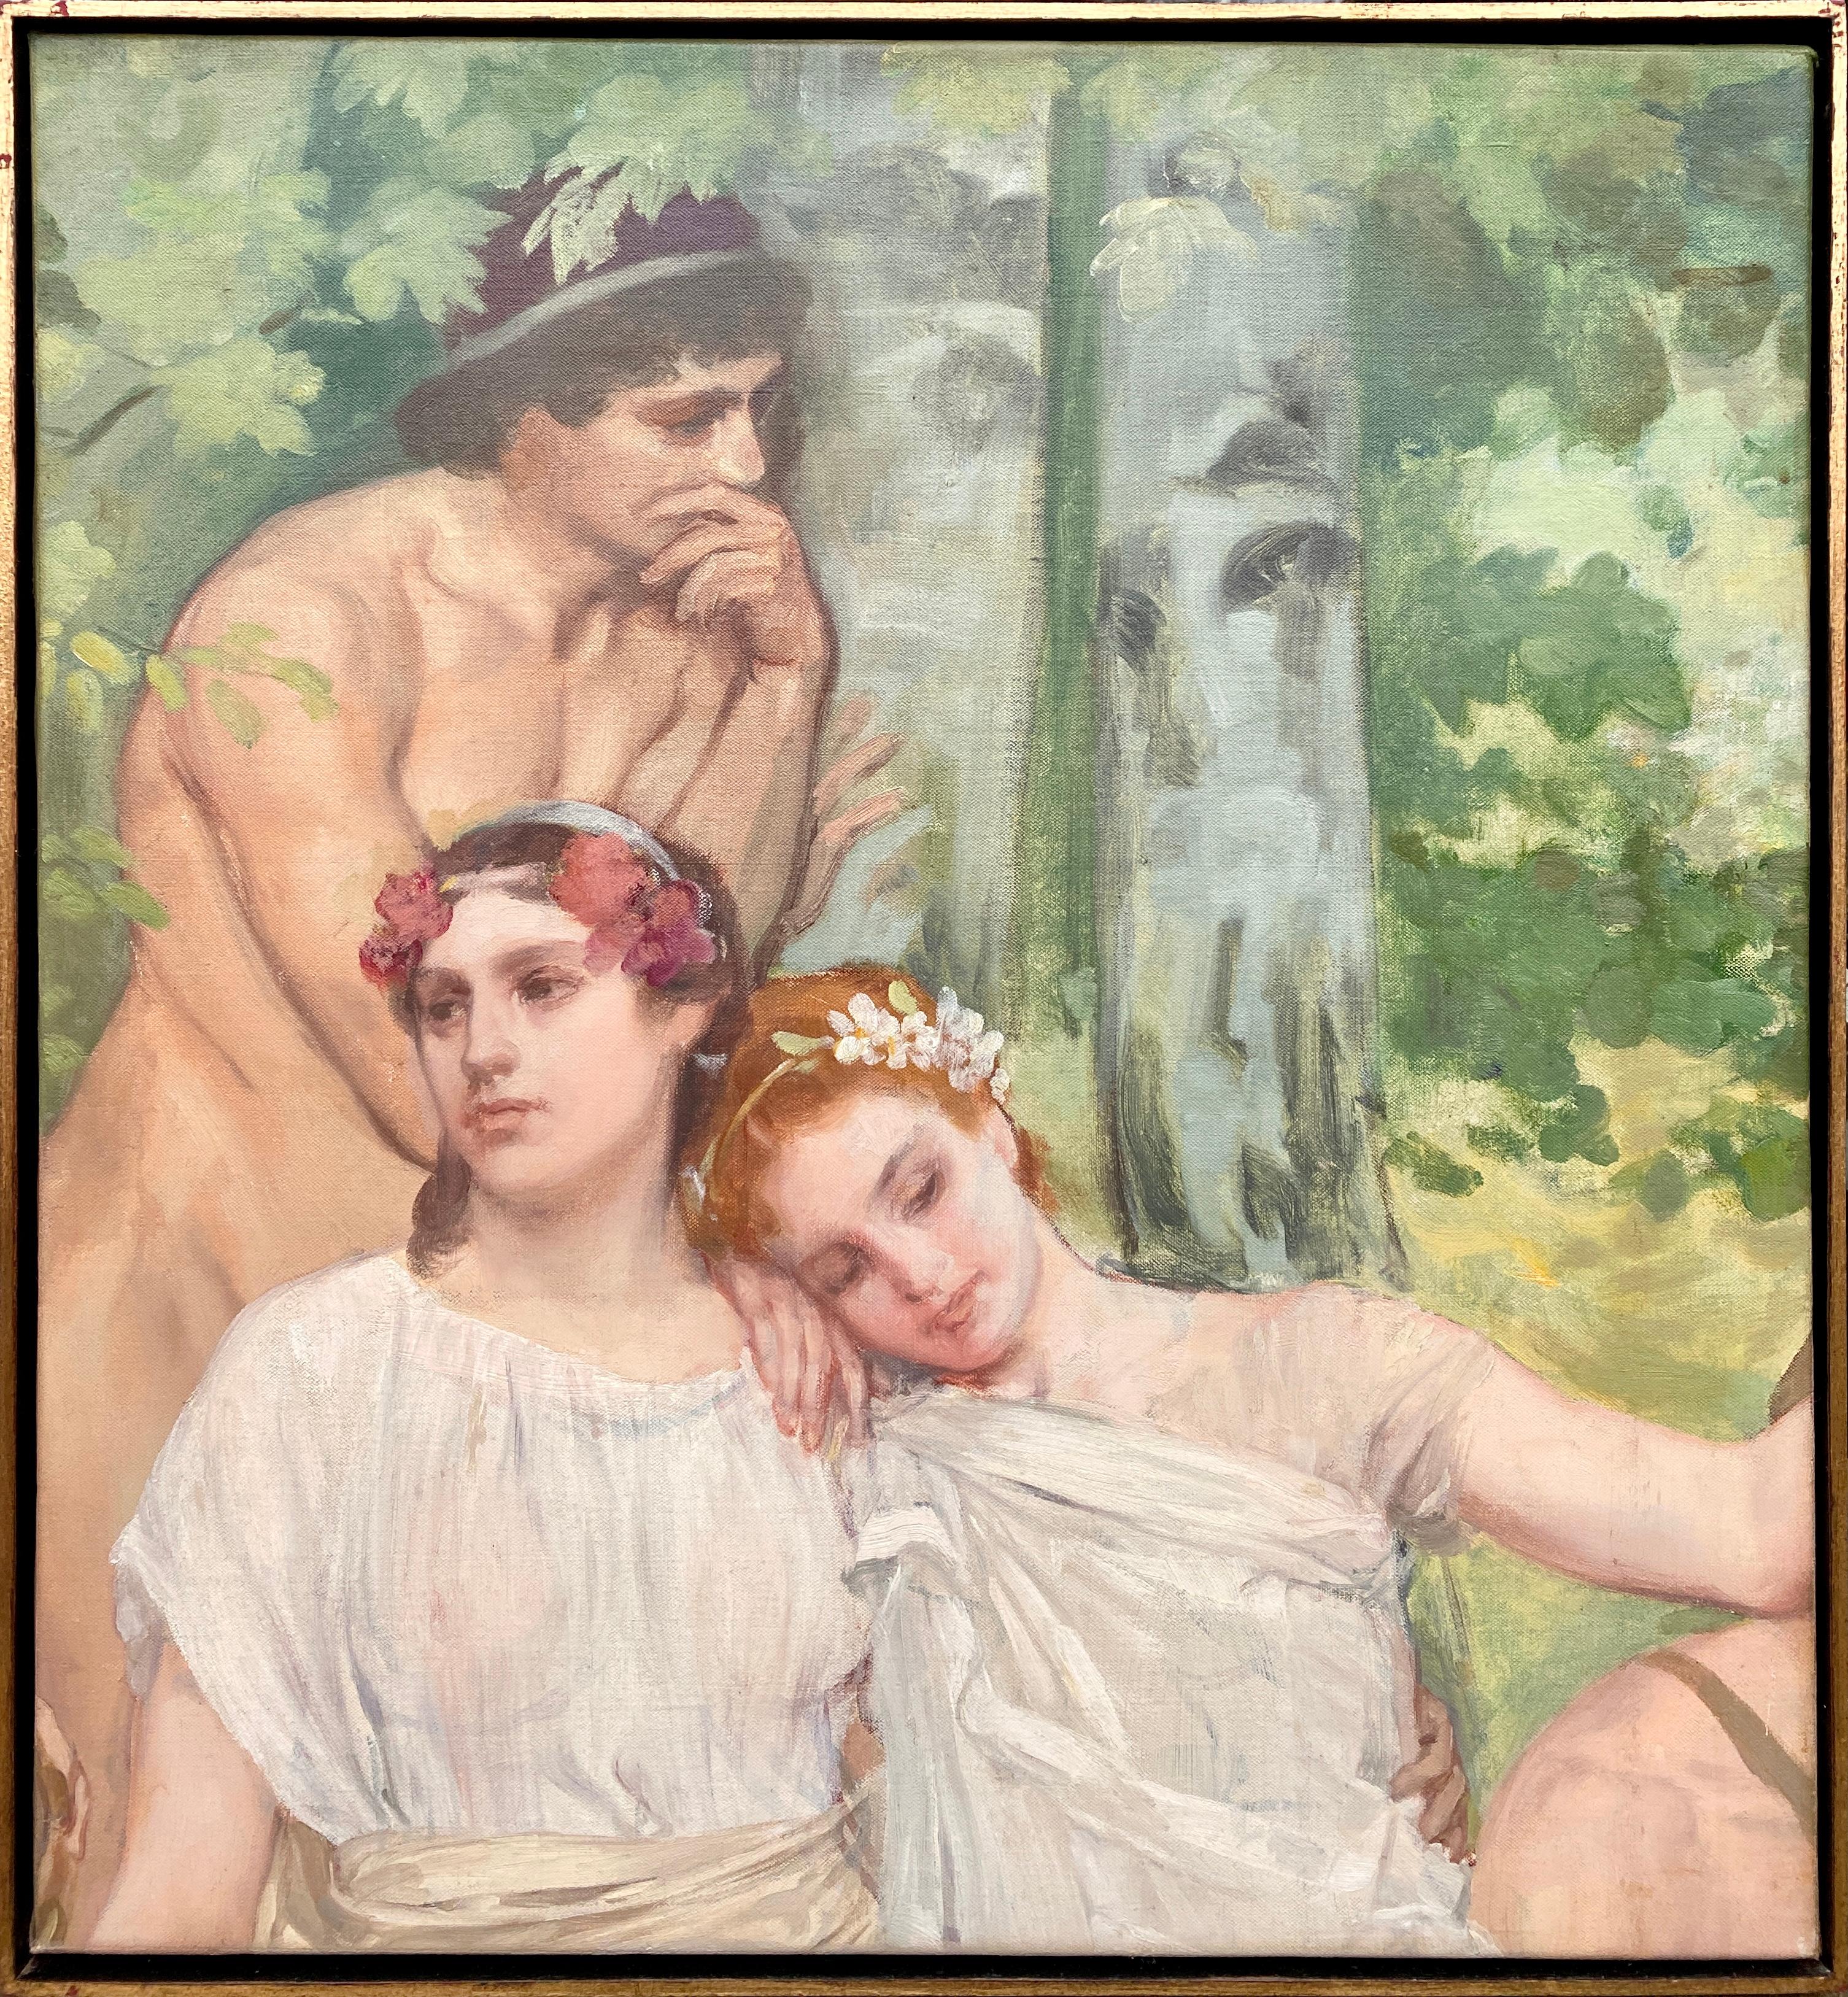 Richir Herman Nude Painting - Romantic Portraits, Herman Richir, Brussels 1866 – 1942, Belgian Painter